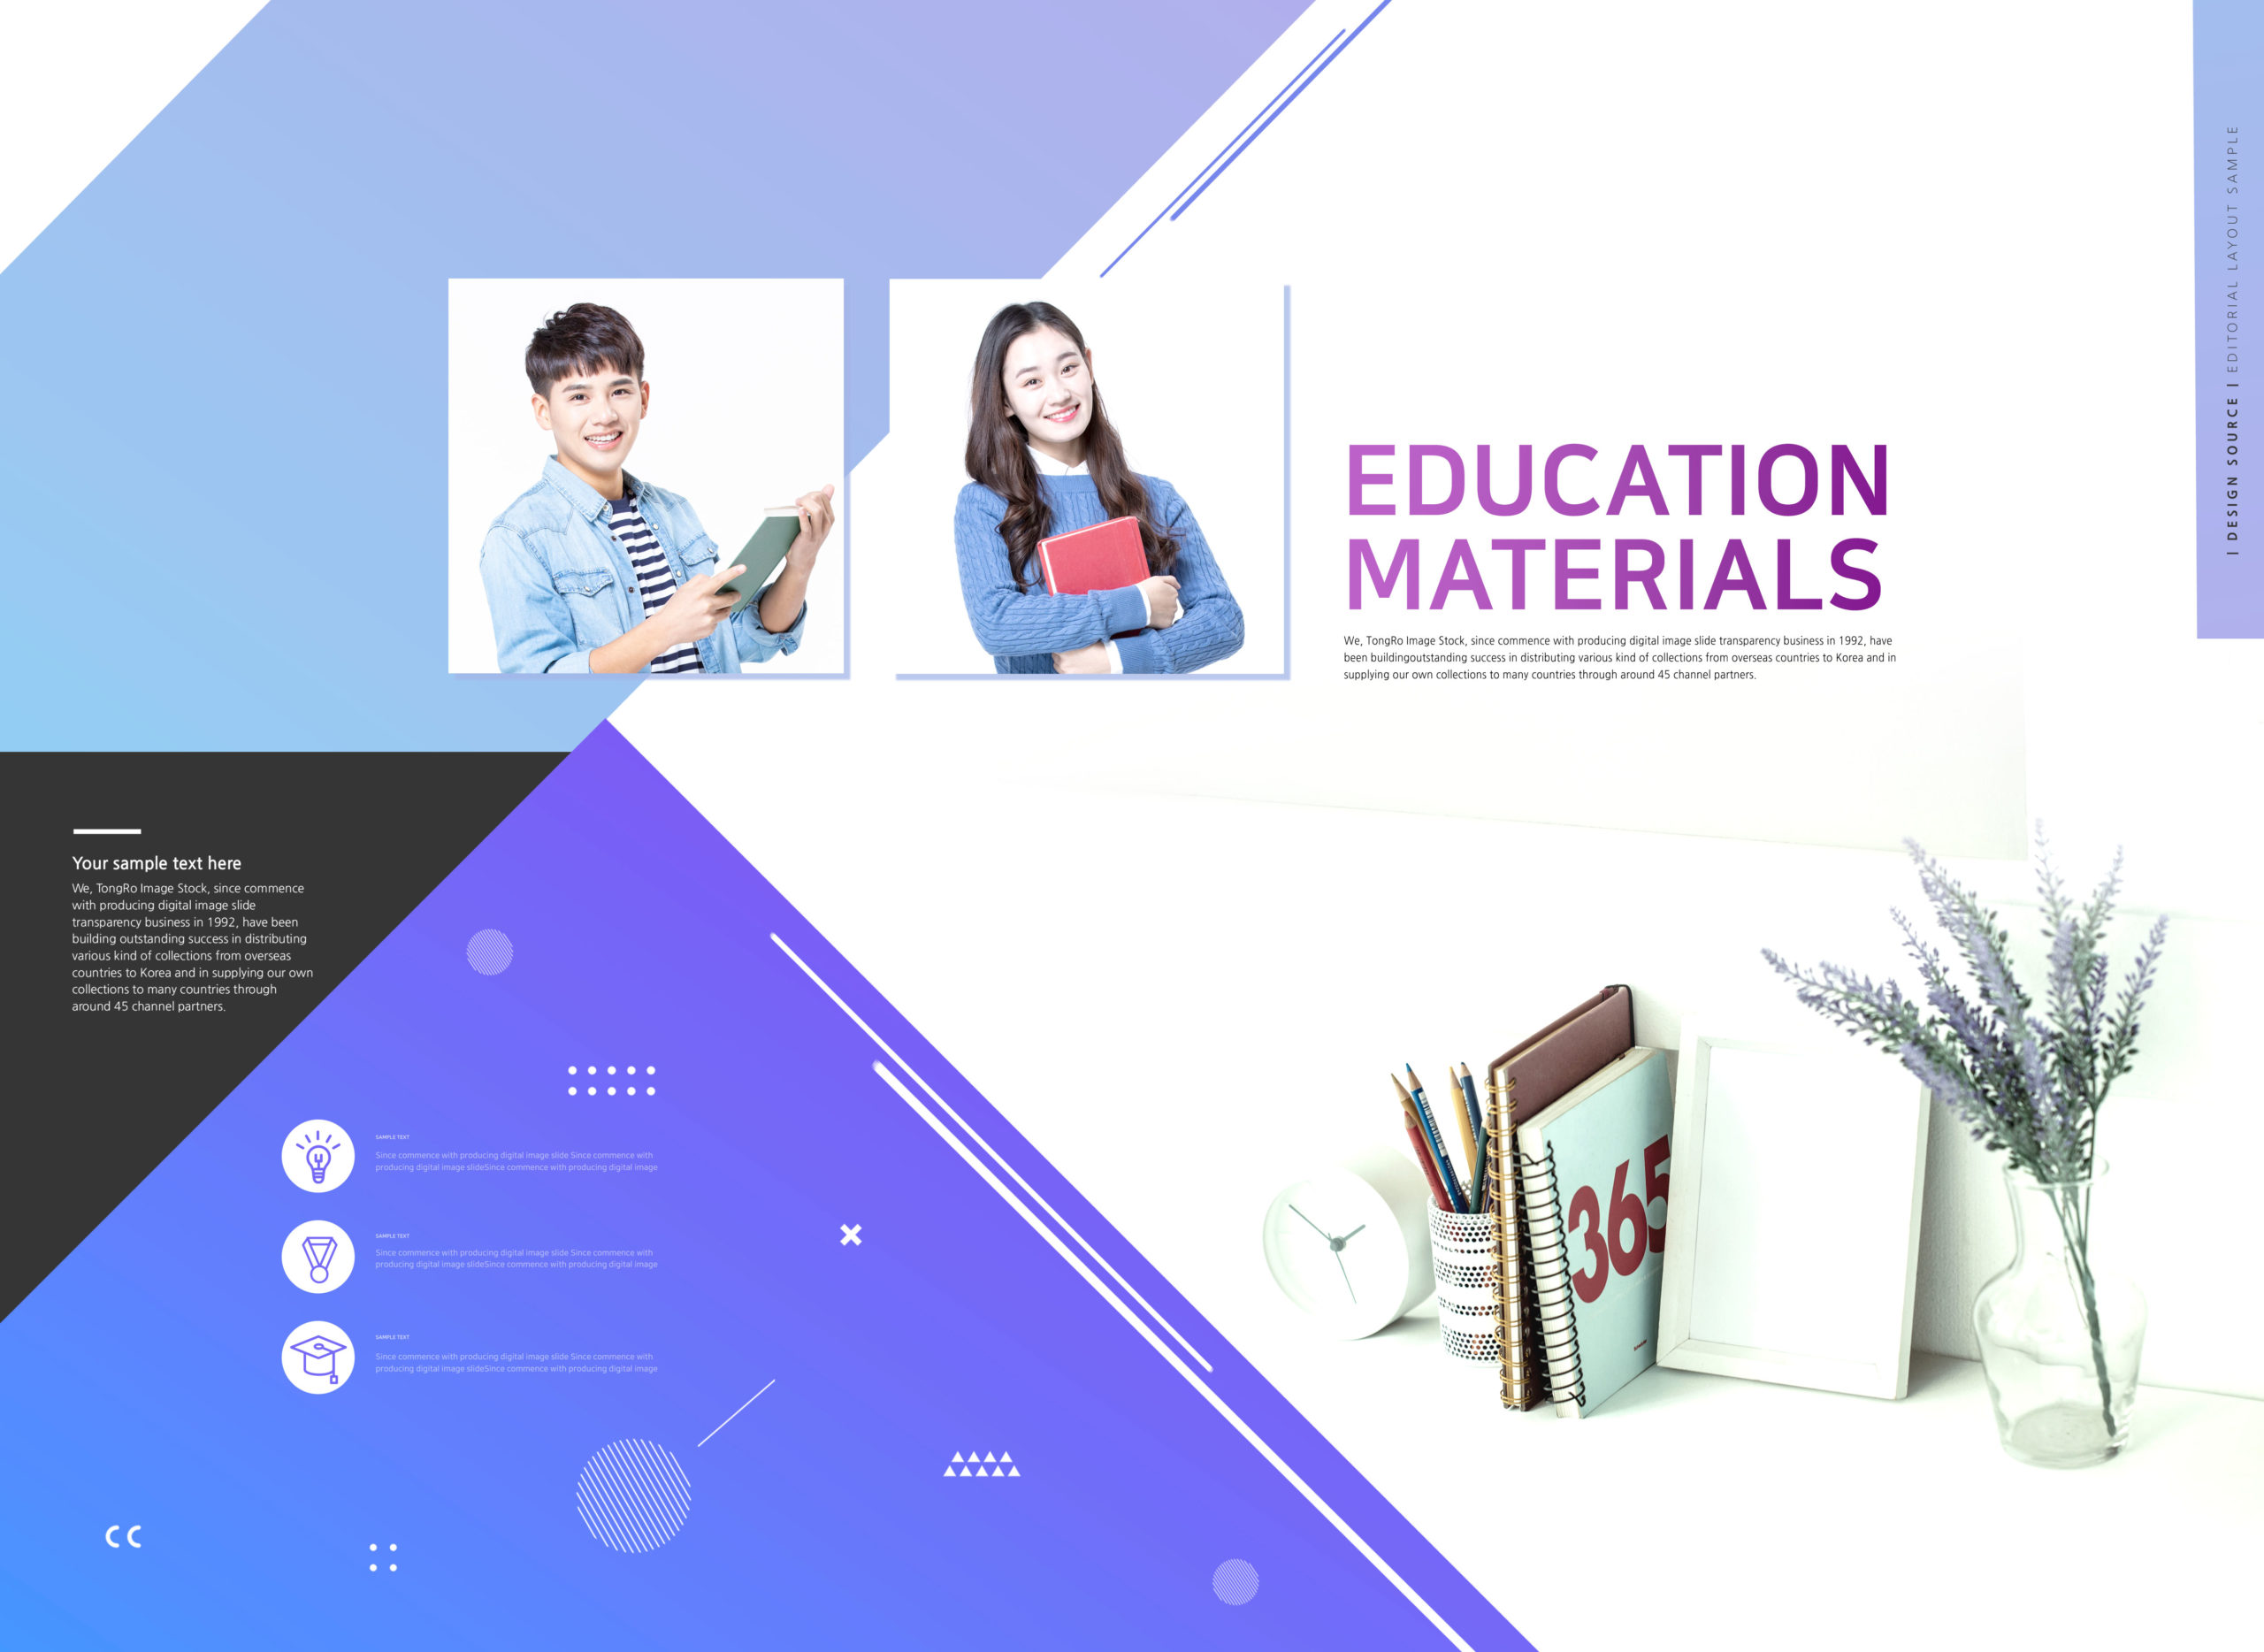 教育材料教育学习网站主页设计psd模板套装插图(1)